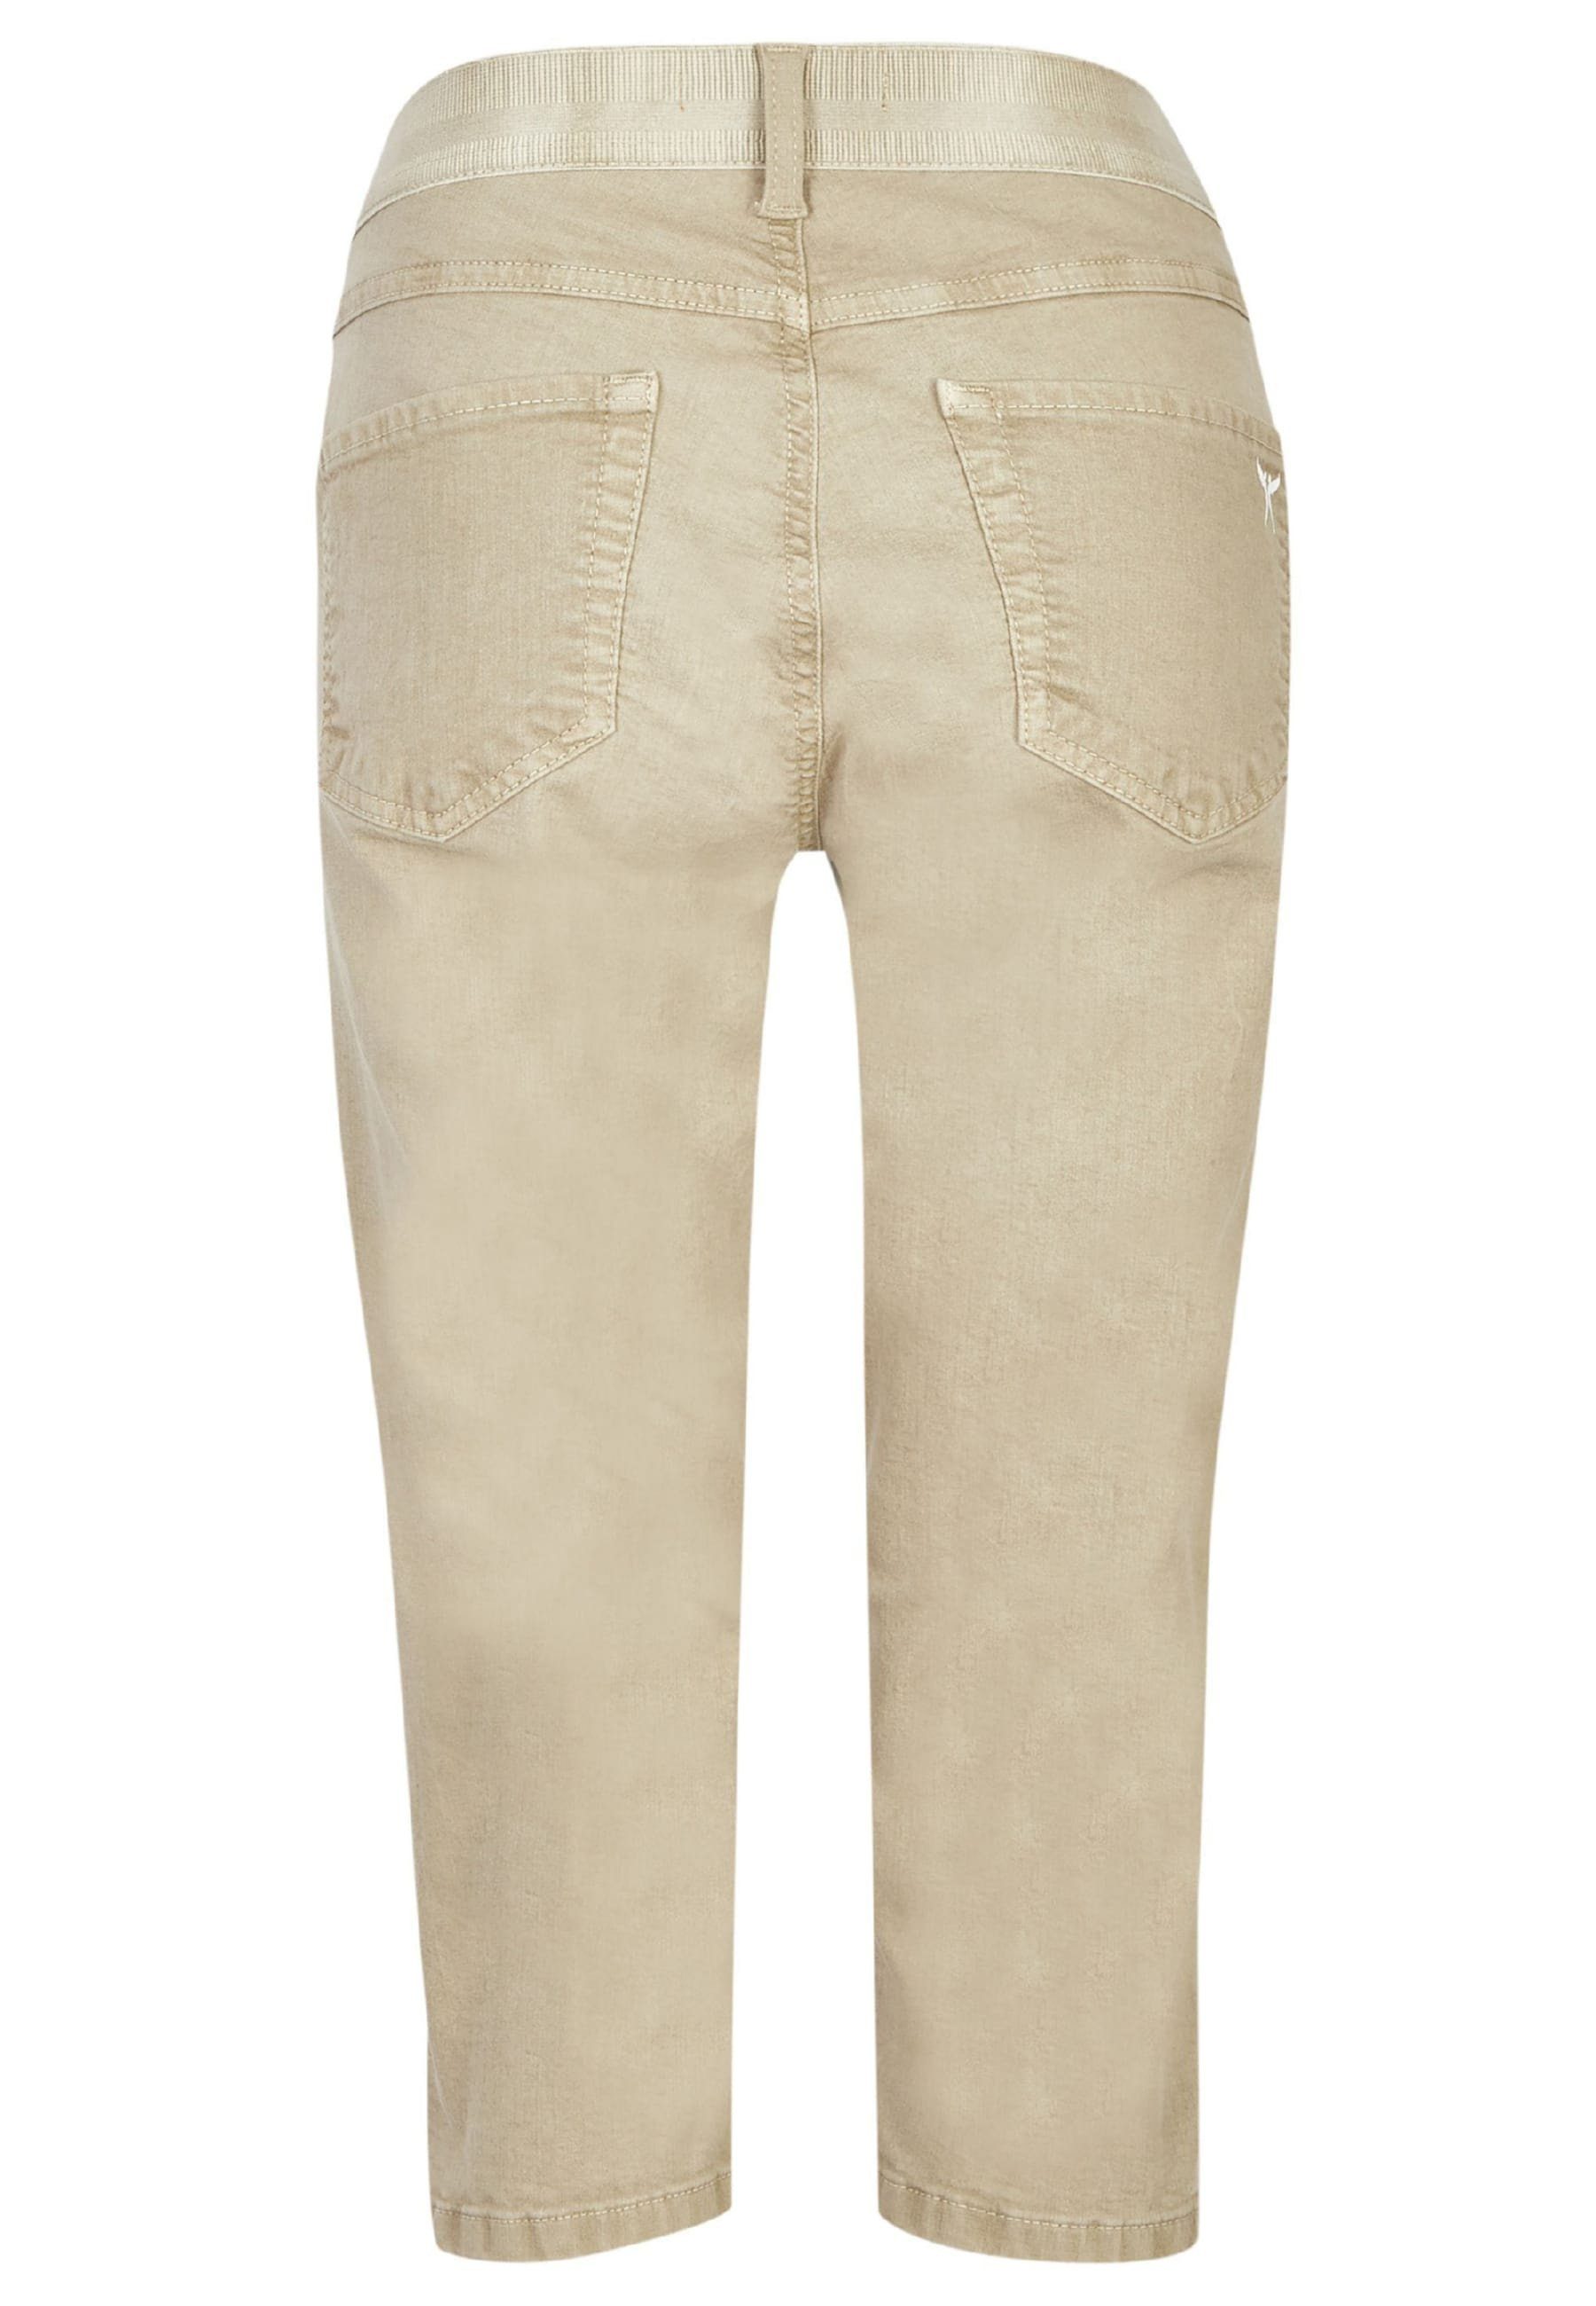 Label-Applikationen Denim Slim-fit-Jeans Capri Coloured mit mit OSFA khaki ANGELS Jeans